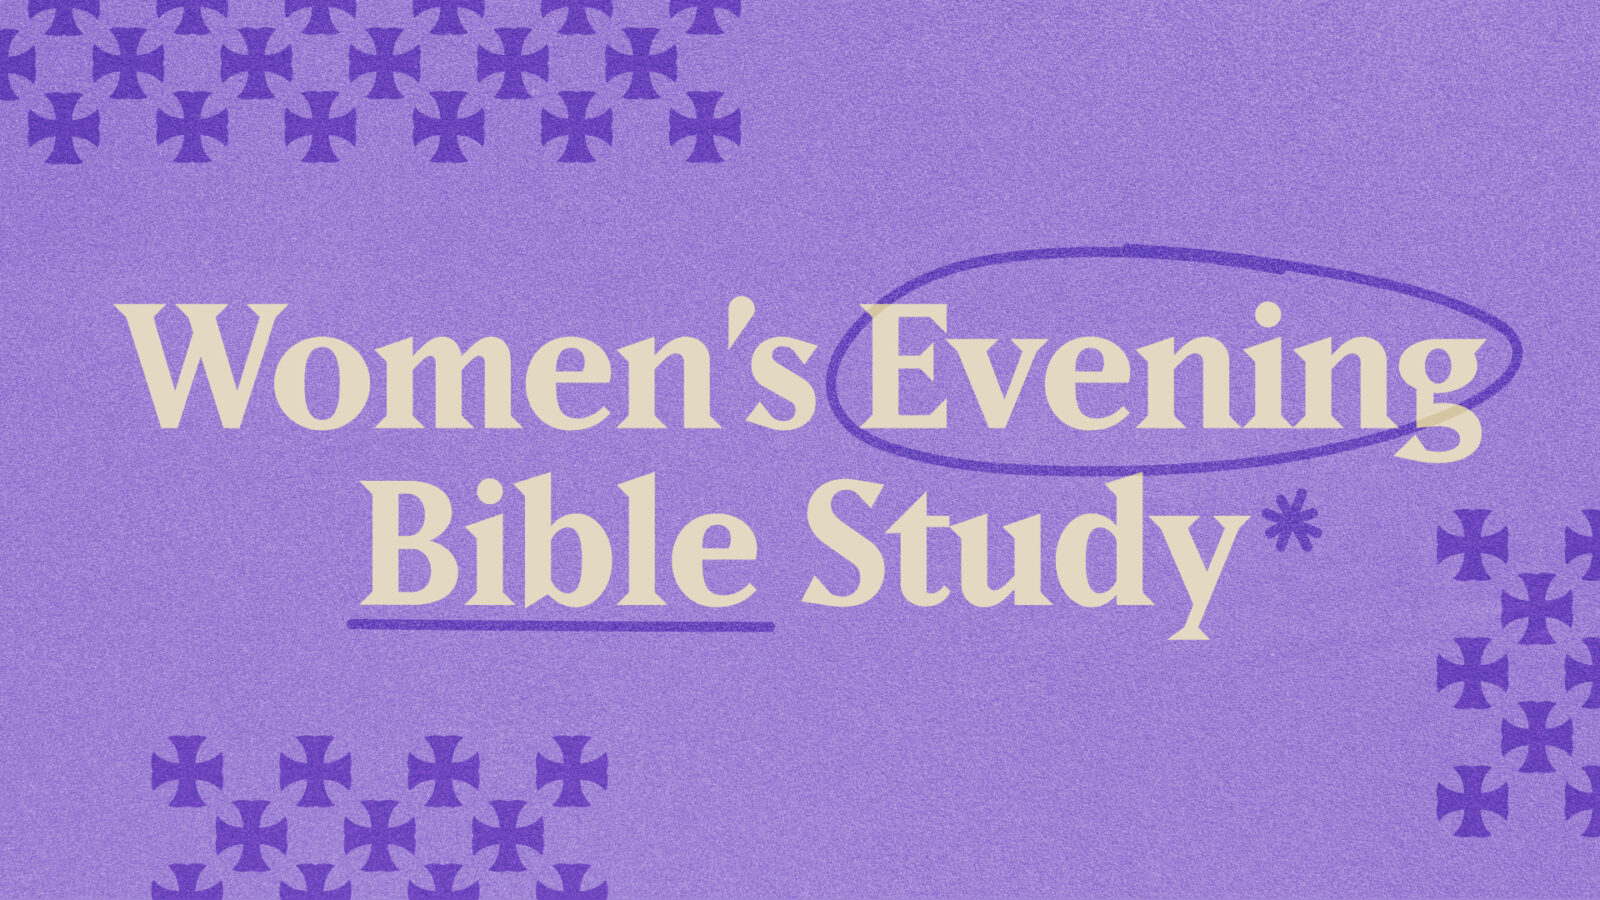 WOMEN’S EVENING BIBLE STUDY FELLOWSHIP (BSF)